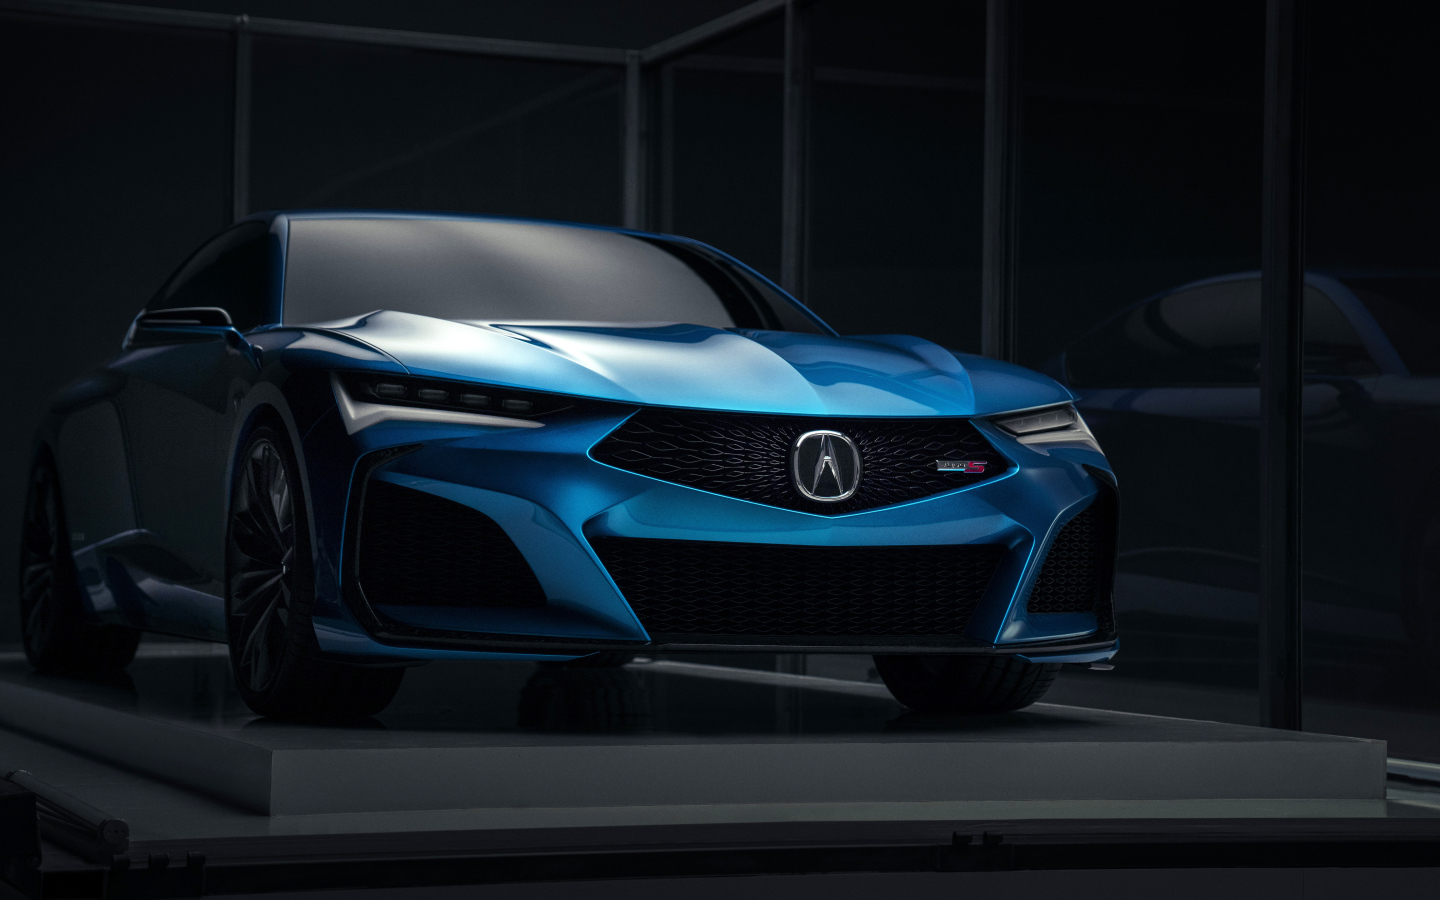 Синий автомобиль Acura Type S Concept 2019 года на презентации